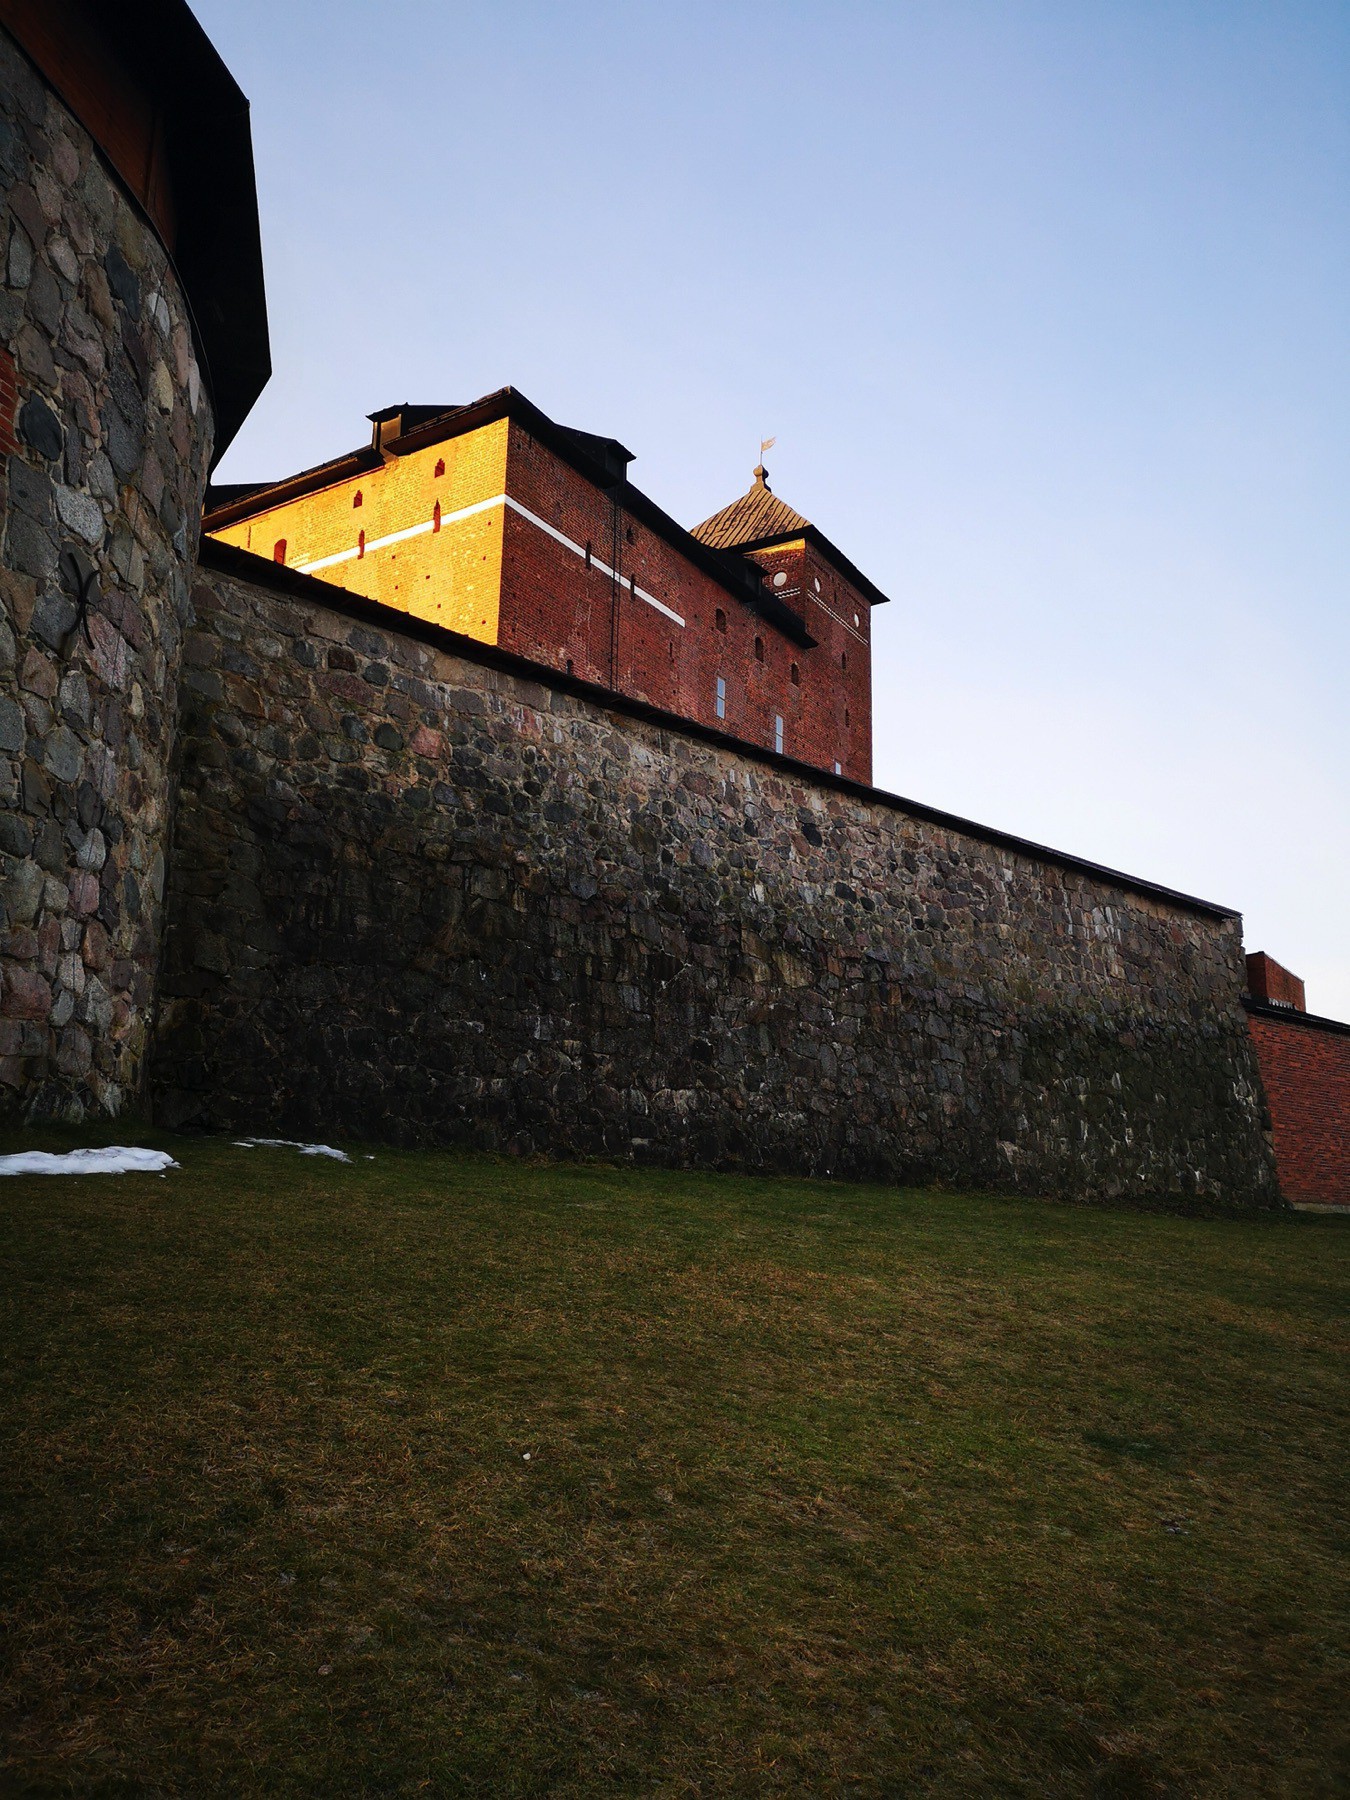 Häme castle lighted with rays of January sun